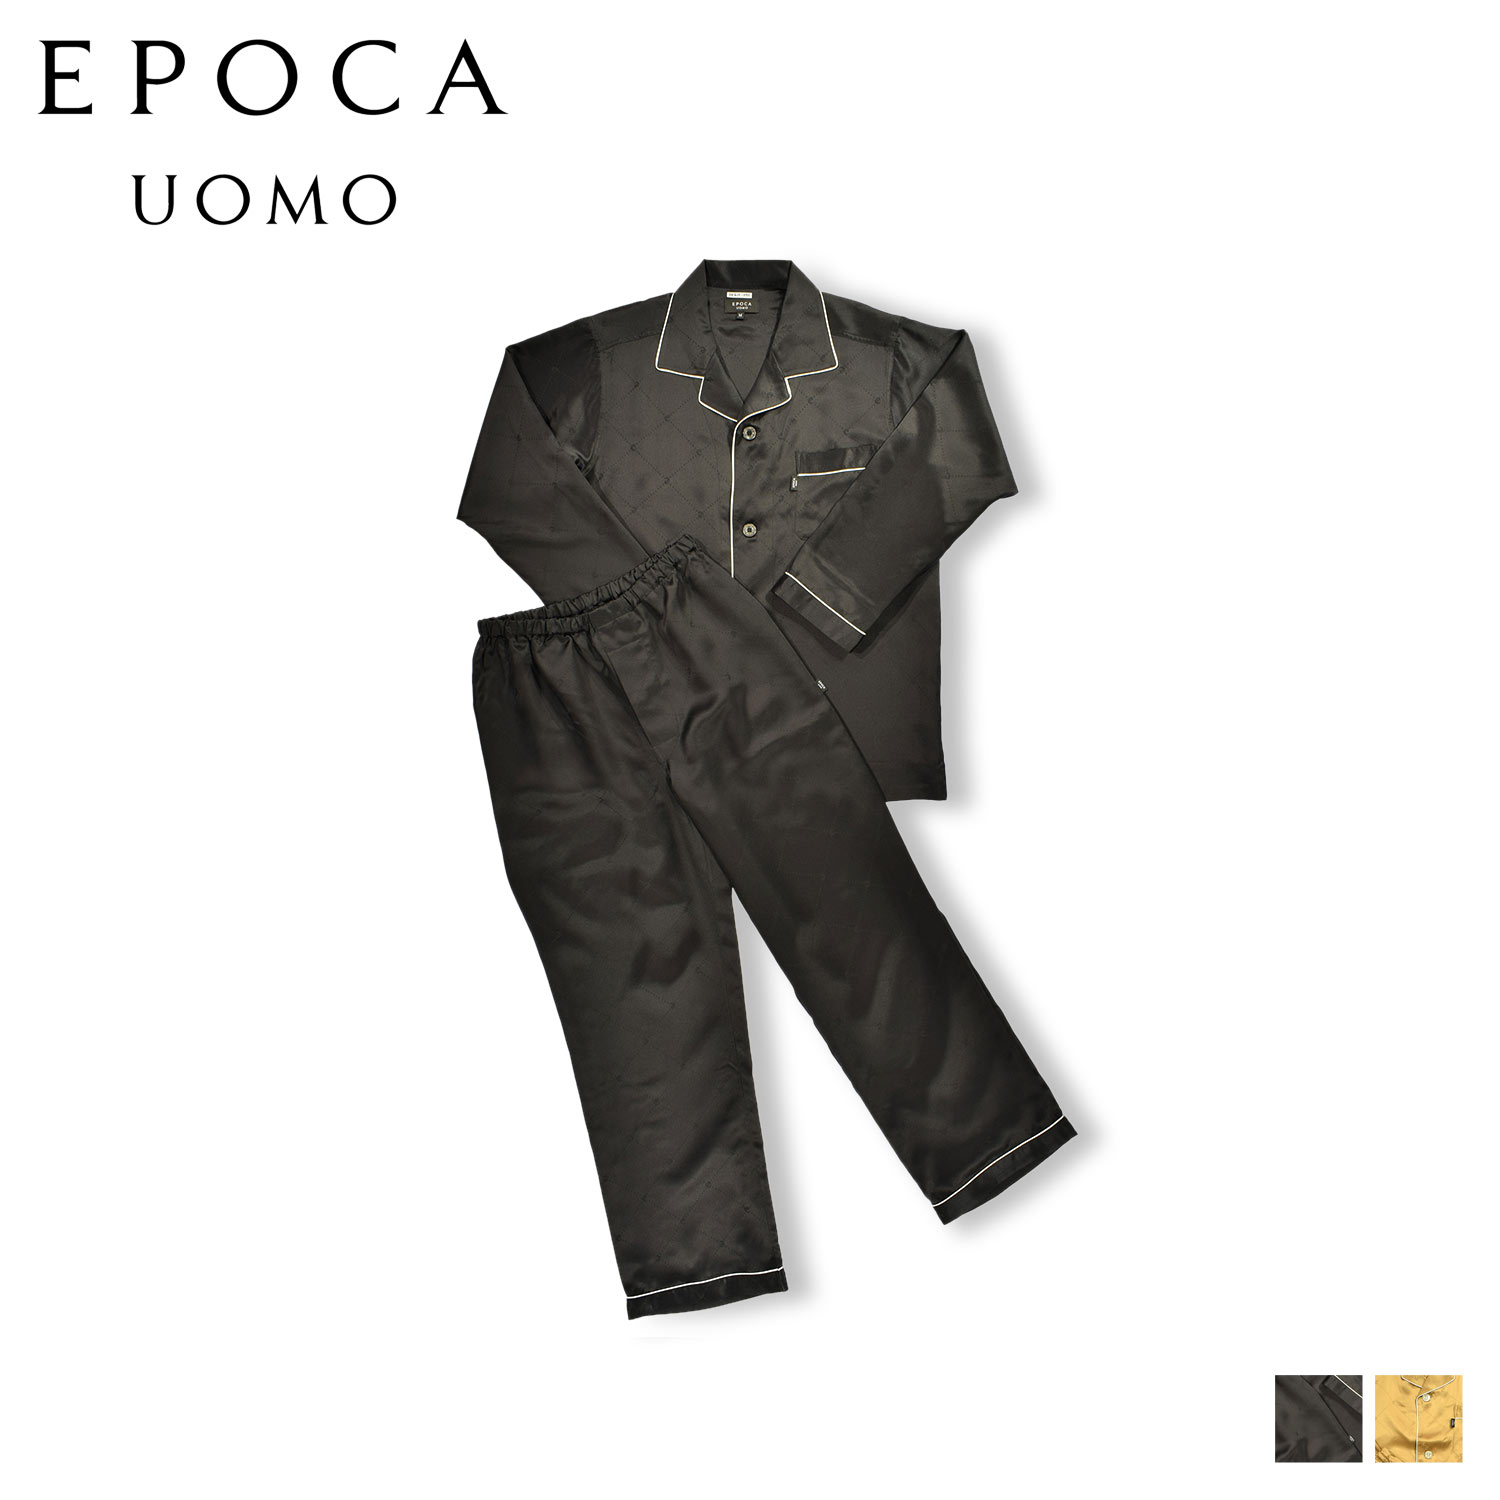 EPOCA UOMO シルク テーラードパジャマ エポカ ウォモ ルームウェア 部屋着 パジャマ セットアップ ナイトウェア メンズ 暖かい 上着 ブラック ベージュ 黒 0368-80